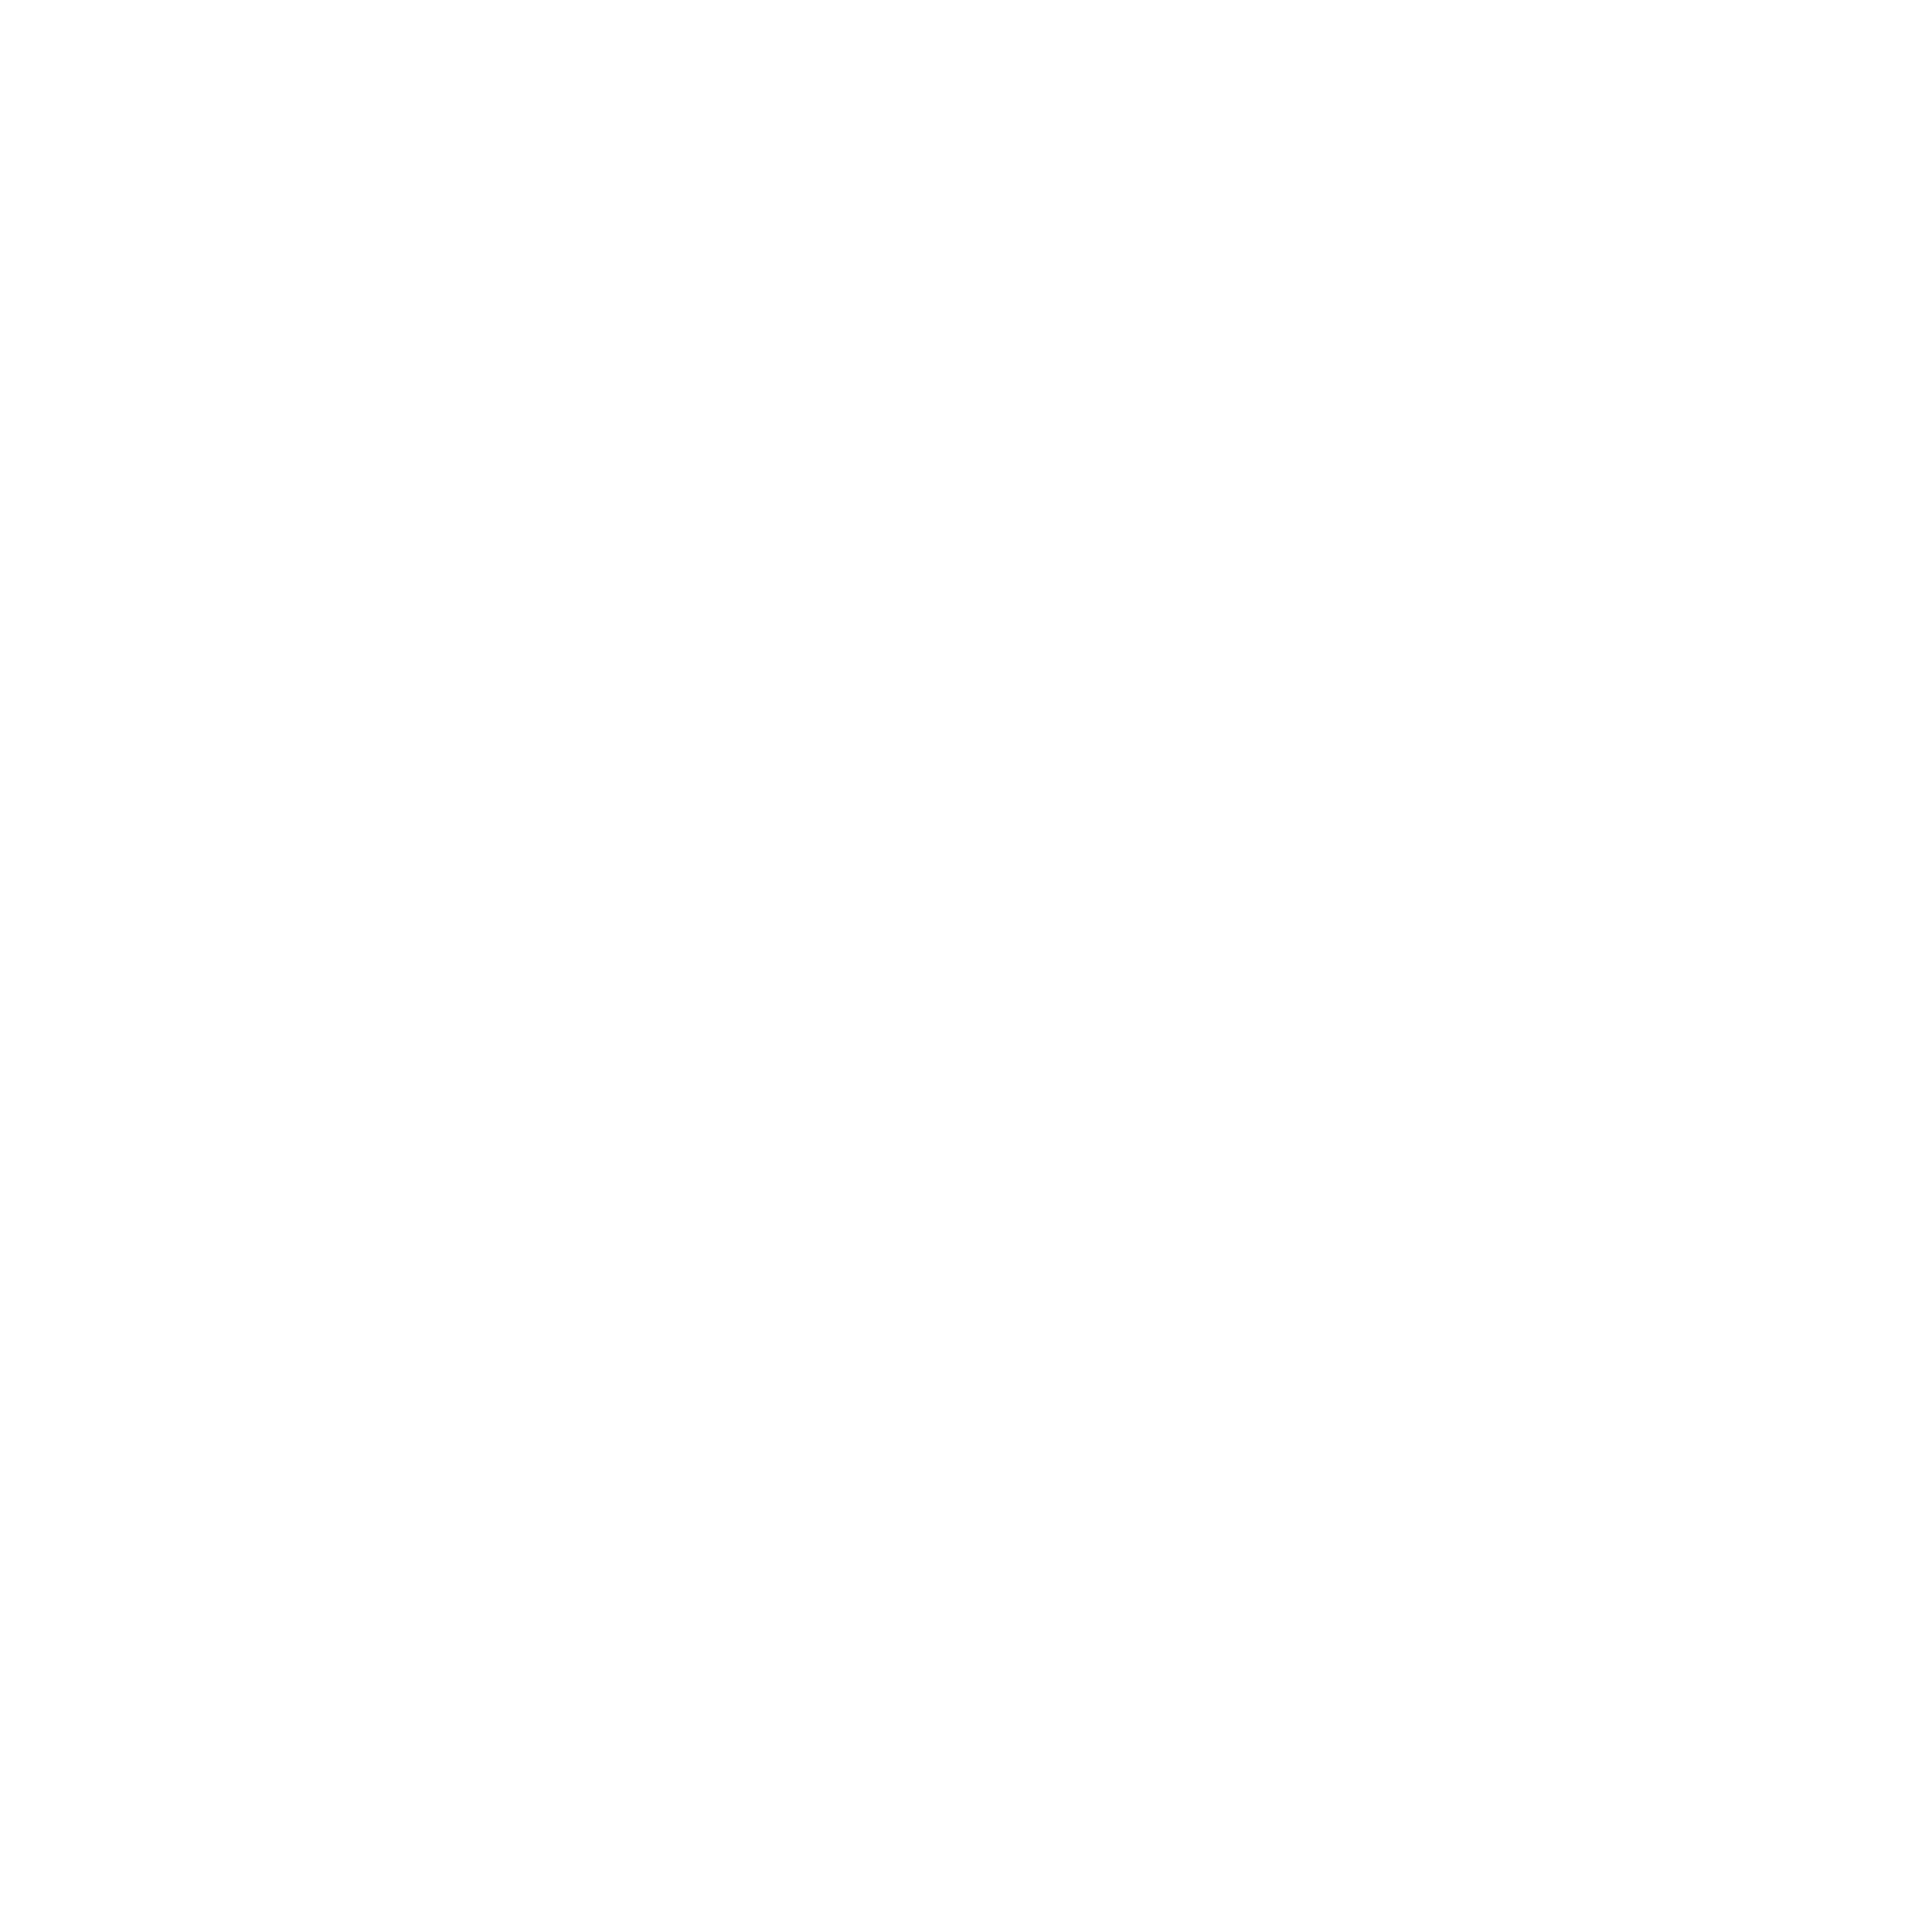 Homewood Suites Square White